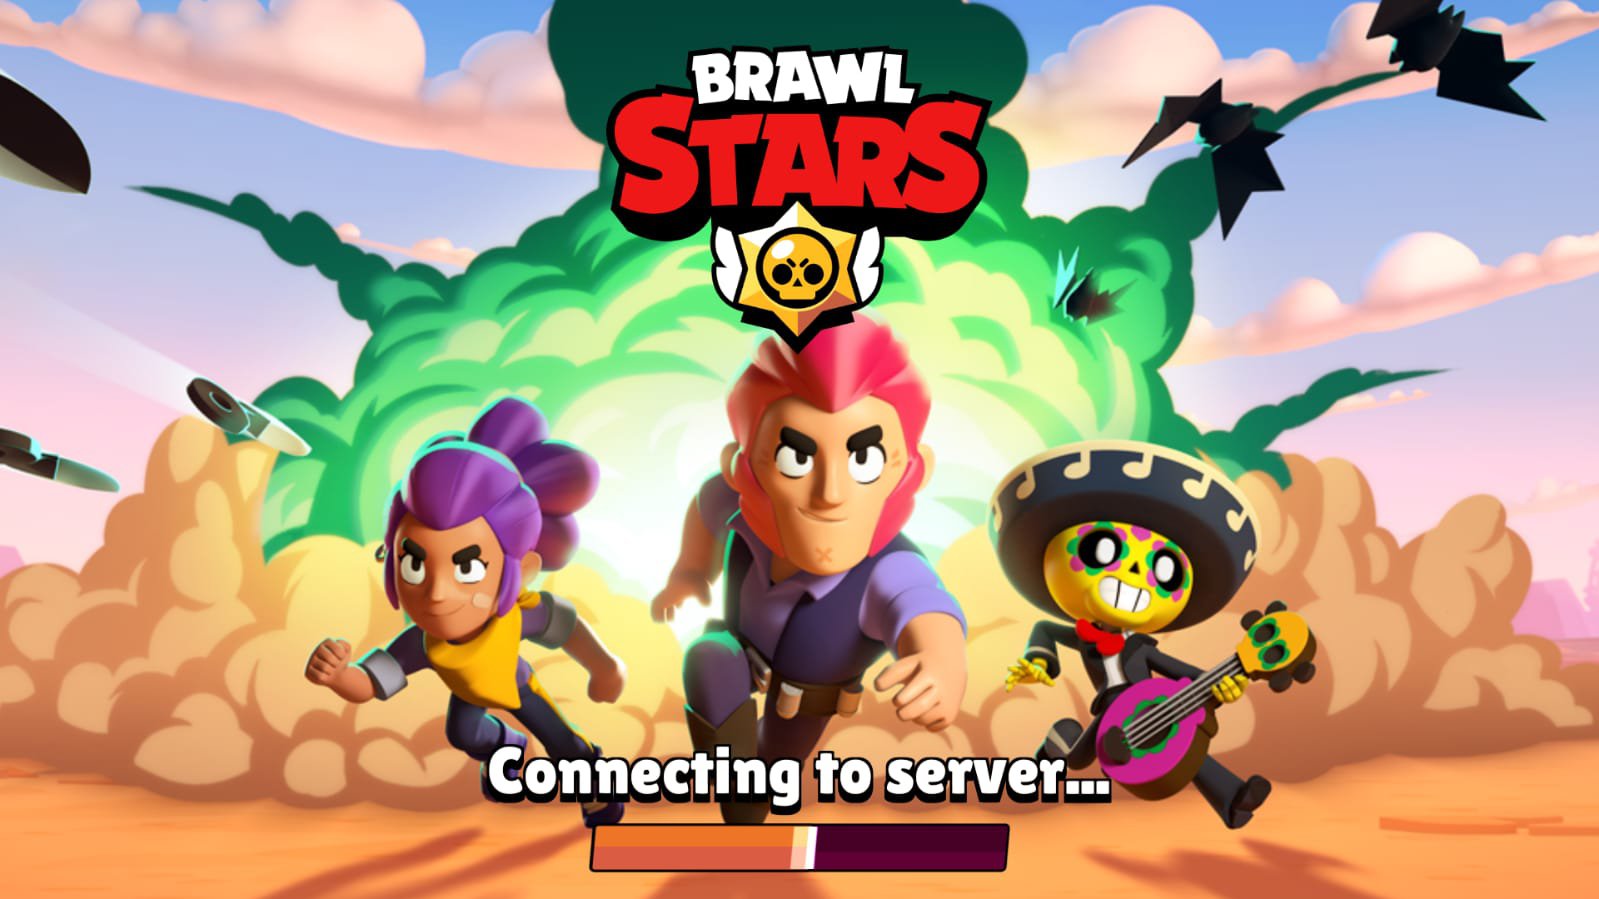 Brawl Stars Versao 17 153 Apk Mod Desenvolvedor Vc E Dotempo Android Apk - versao dos desenvolvedores brawl stars